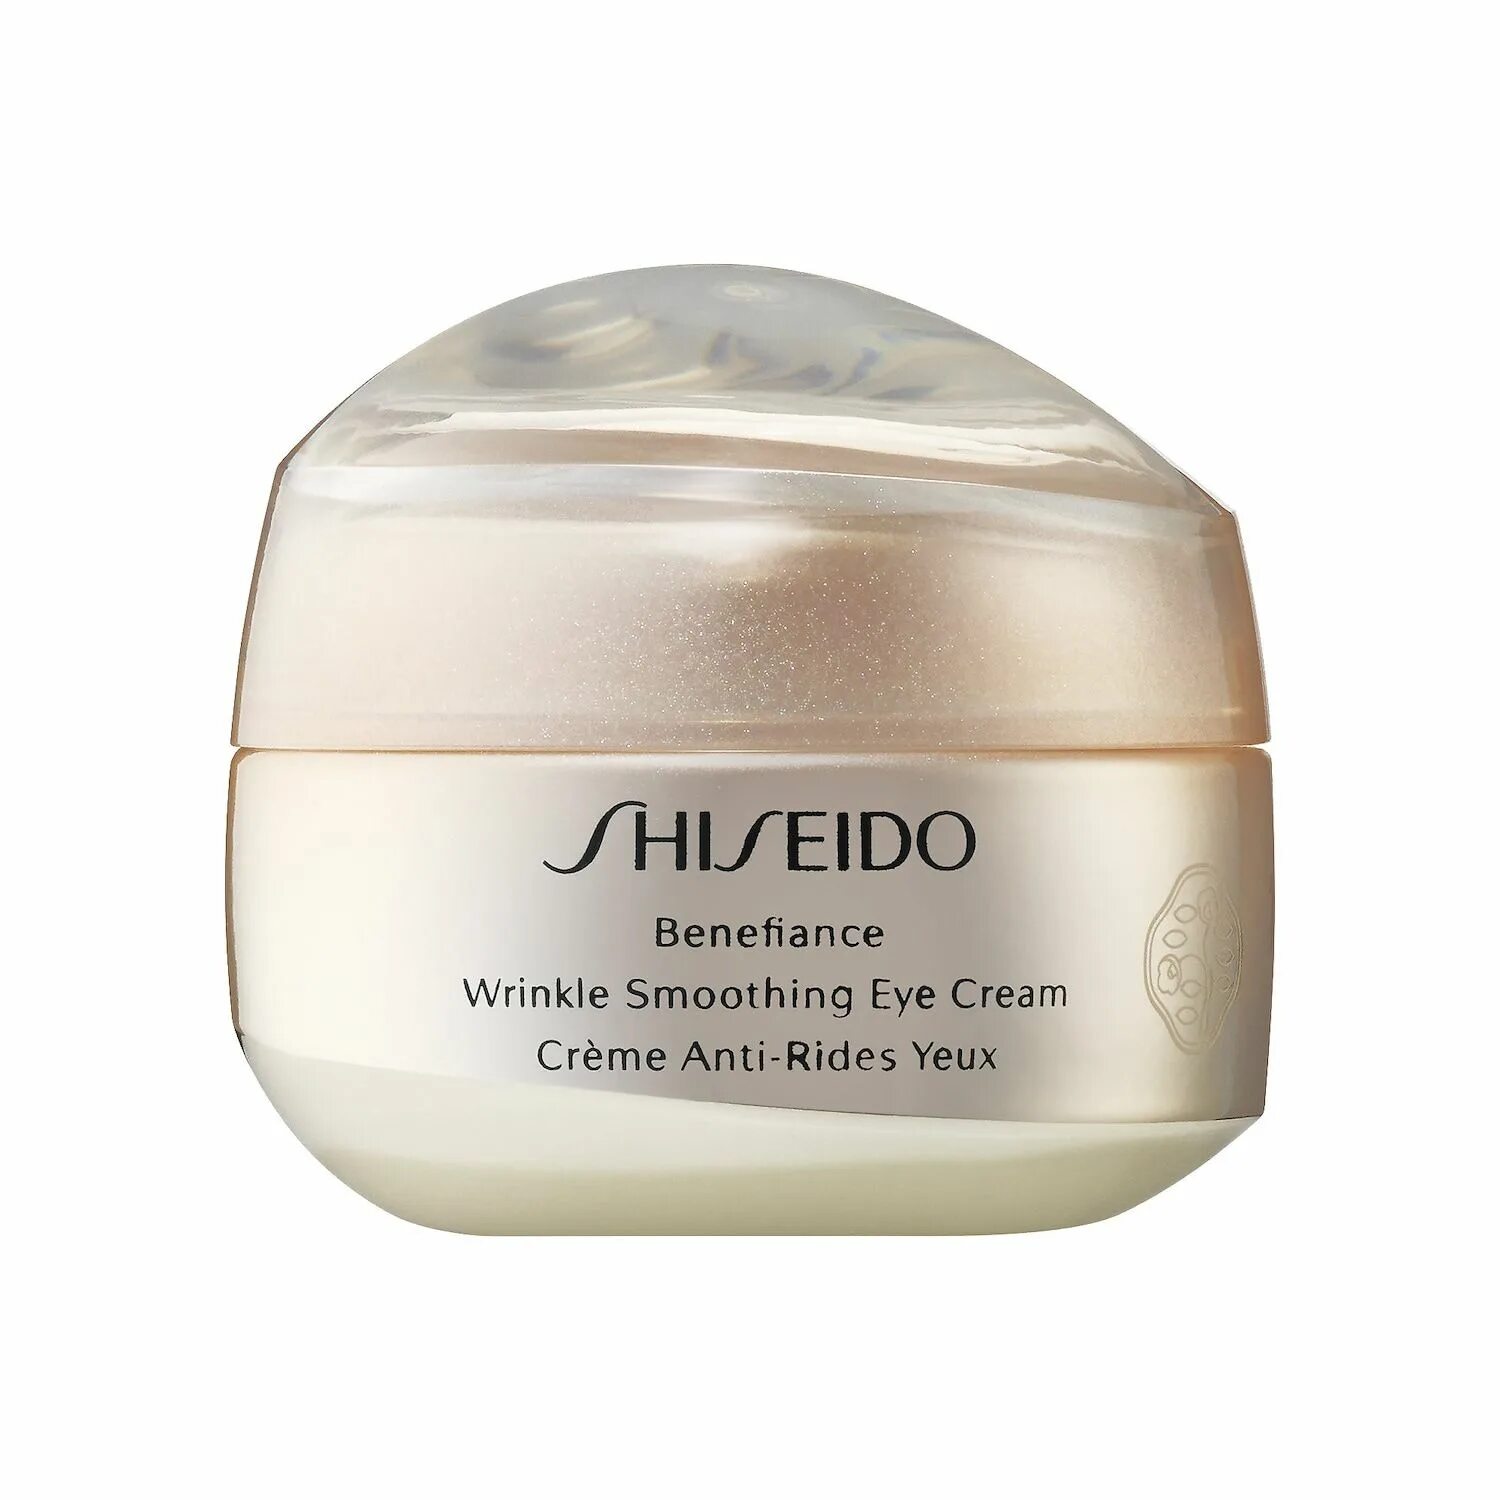 Shiseido Benefiance Eye Cream. Shiseido Benefiance Wrinkle Smoothing Eye Cream. Shiseido Wrinkle Smoothing Cream. Shiseido // крем Benefiance Wrinkle Smoothing Eye Cream 15ml.